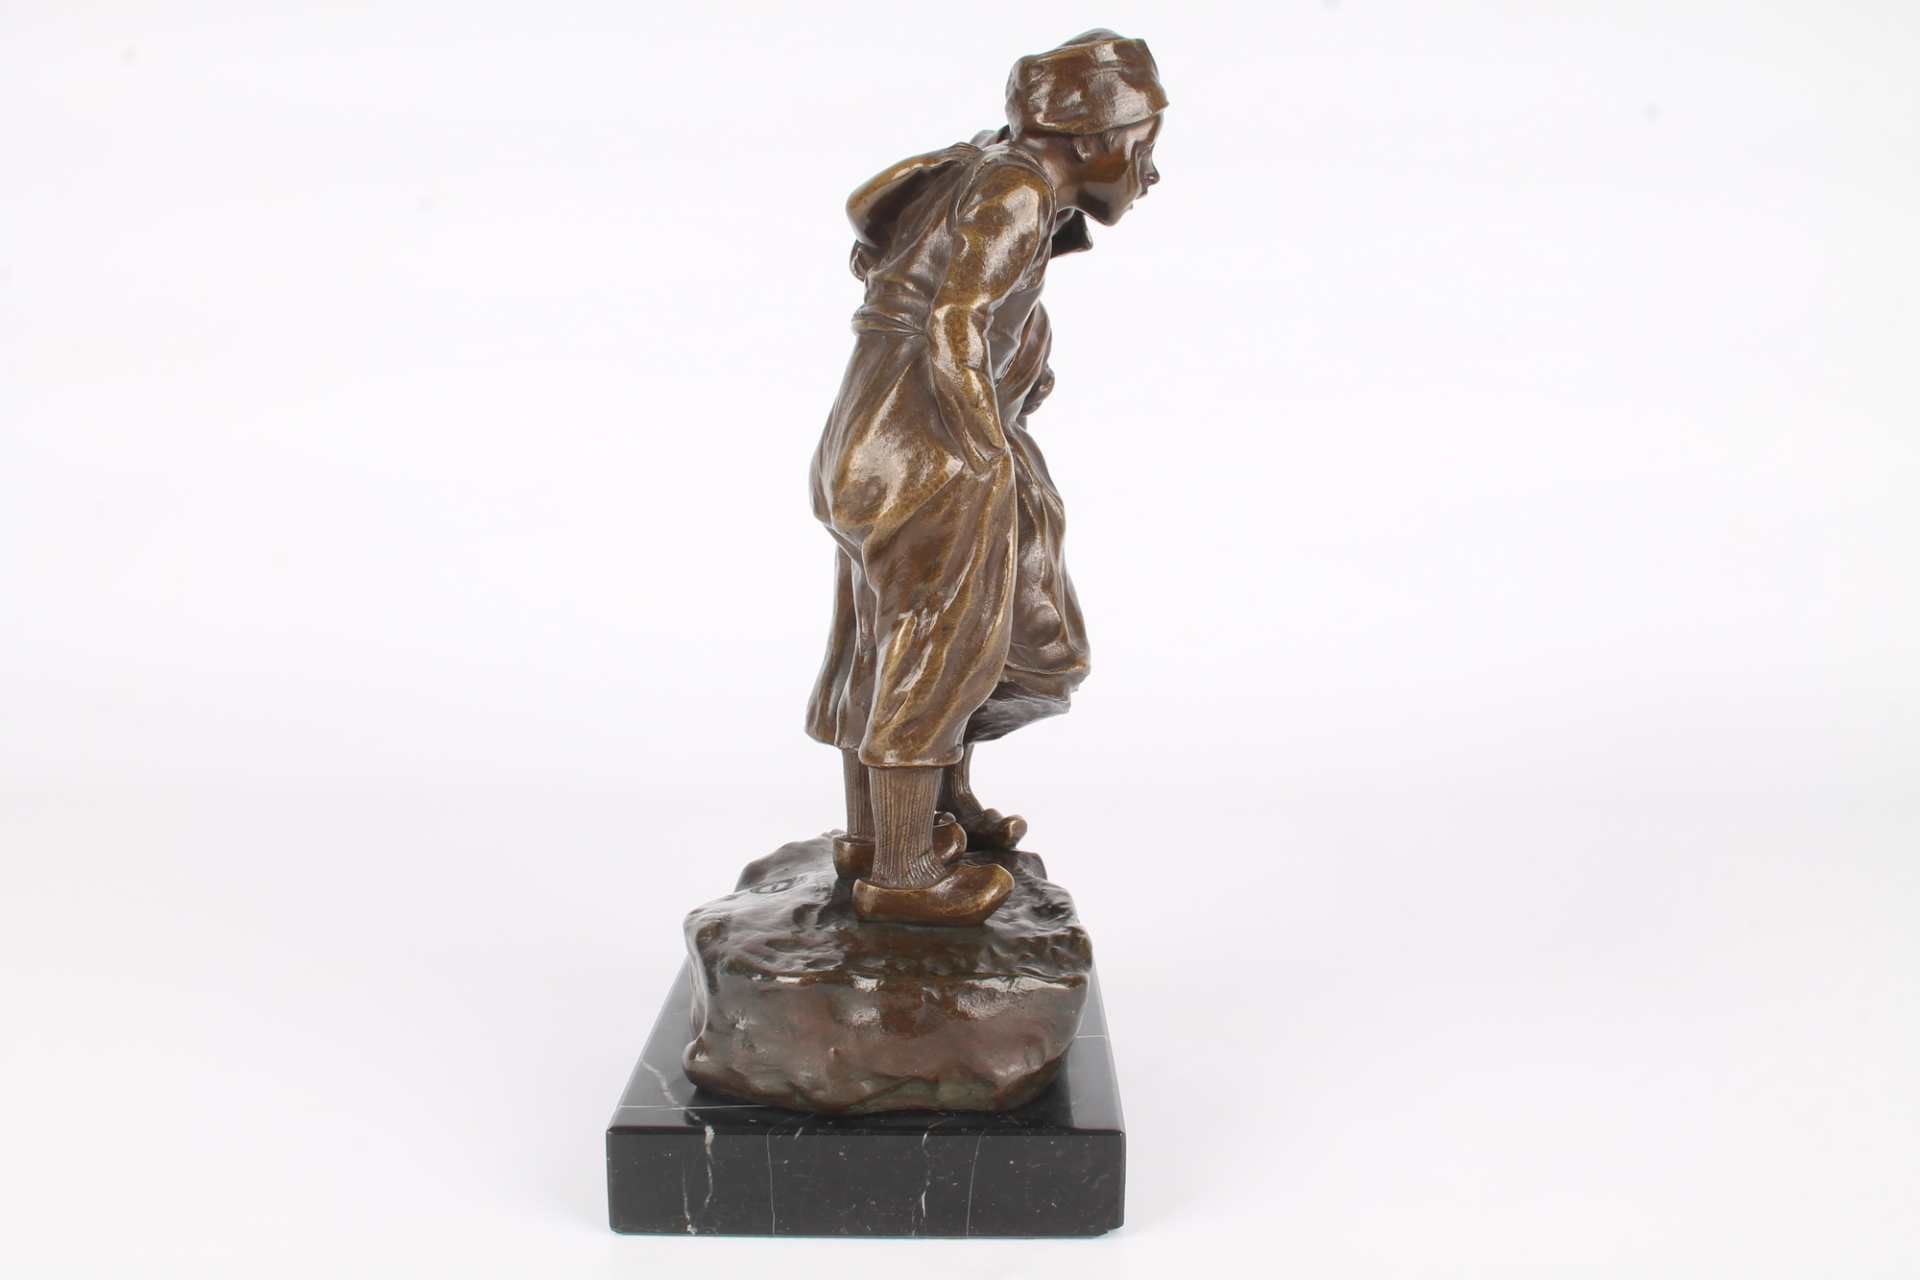 Bronze Figurengruppe by Martin & Piltzing Berlin, the secret figurine, - Bild 3 aus 6